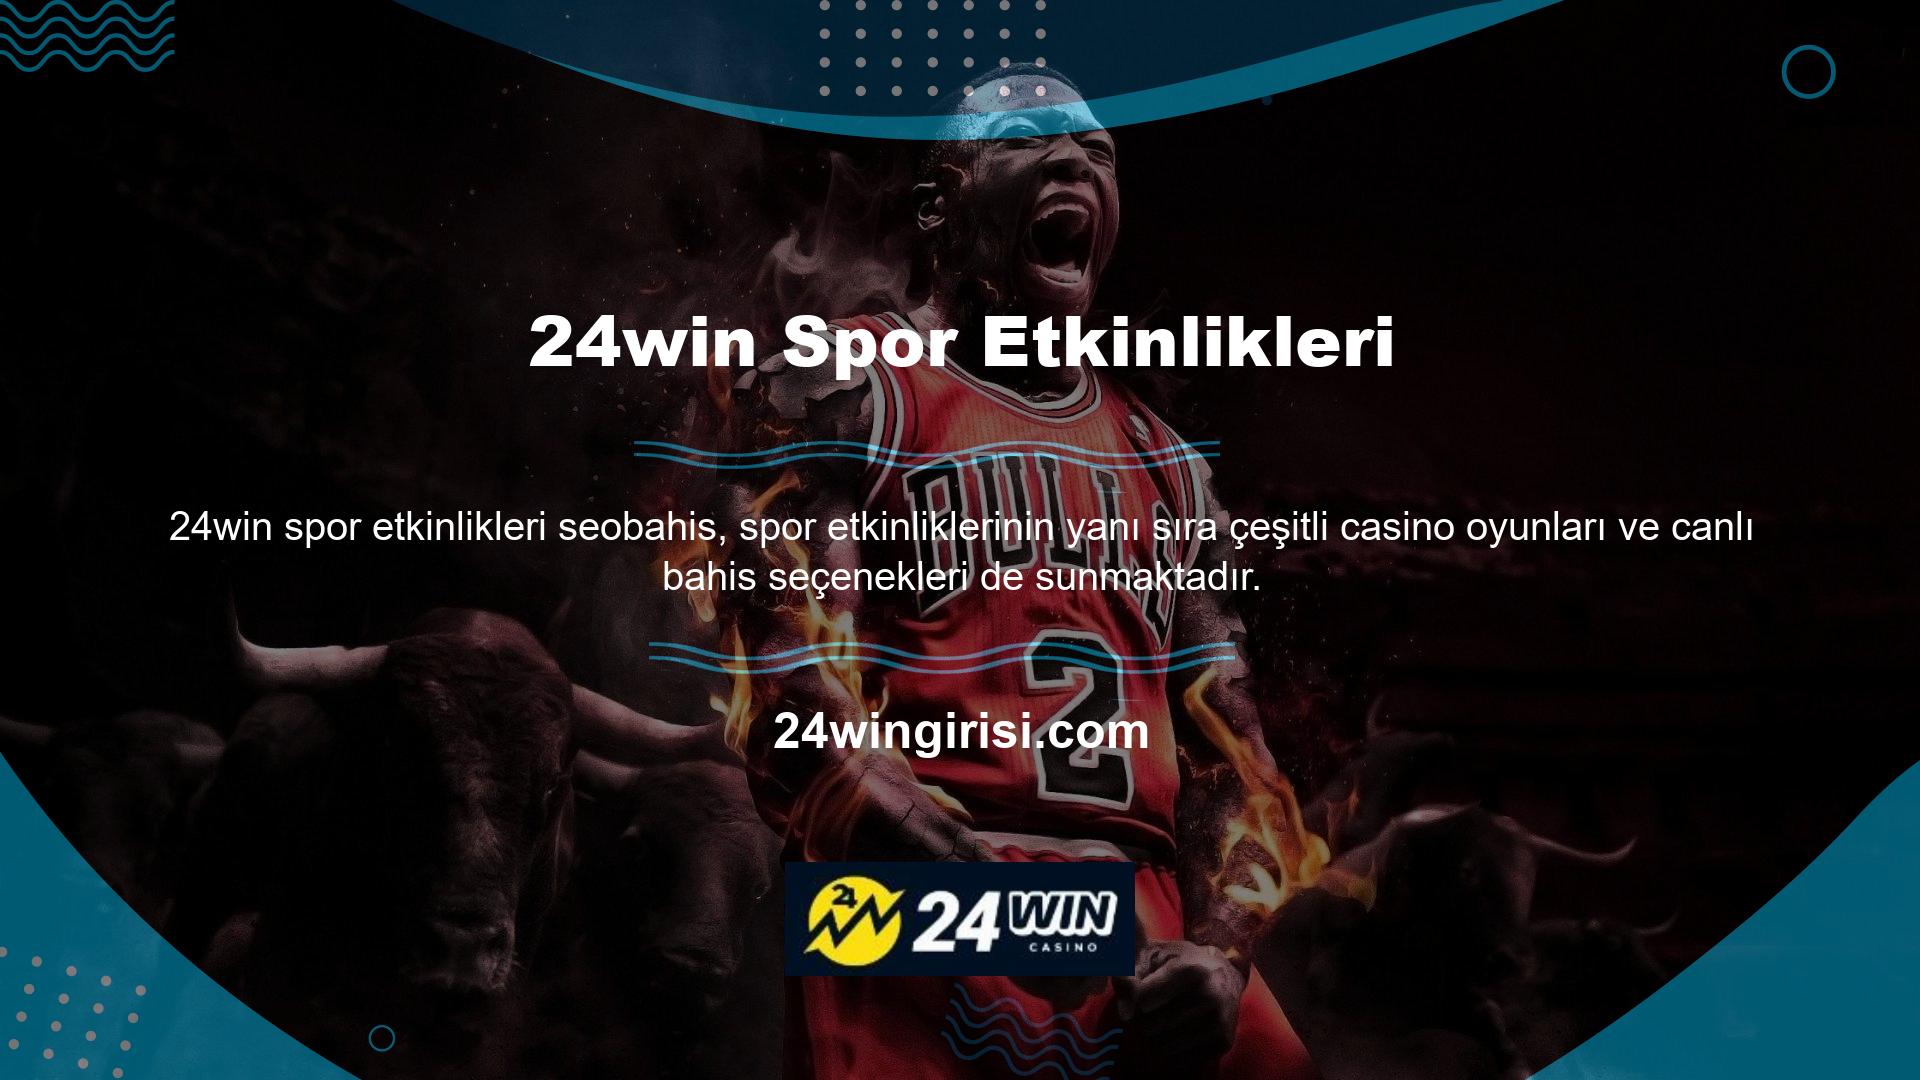 24win, gerçek krupiyerlerin katılımıyla tüm canlı casino oyunlarını sunar